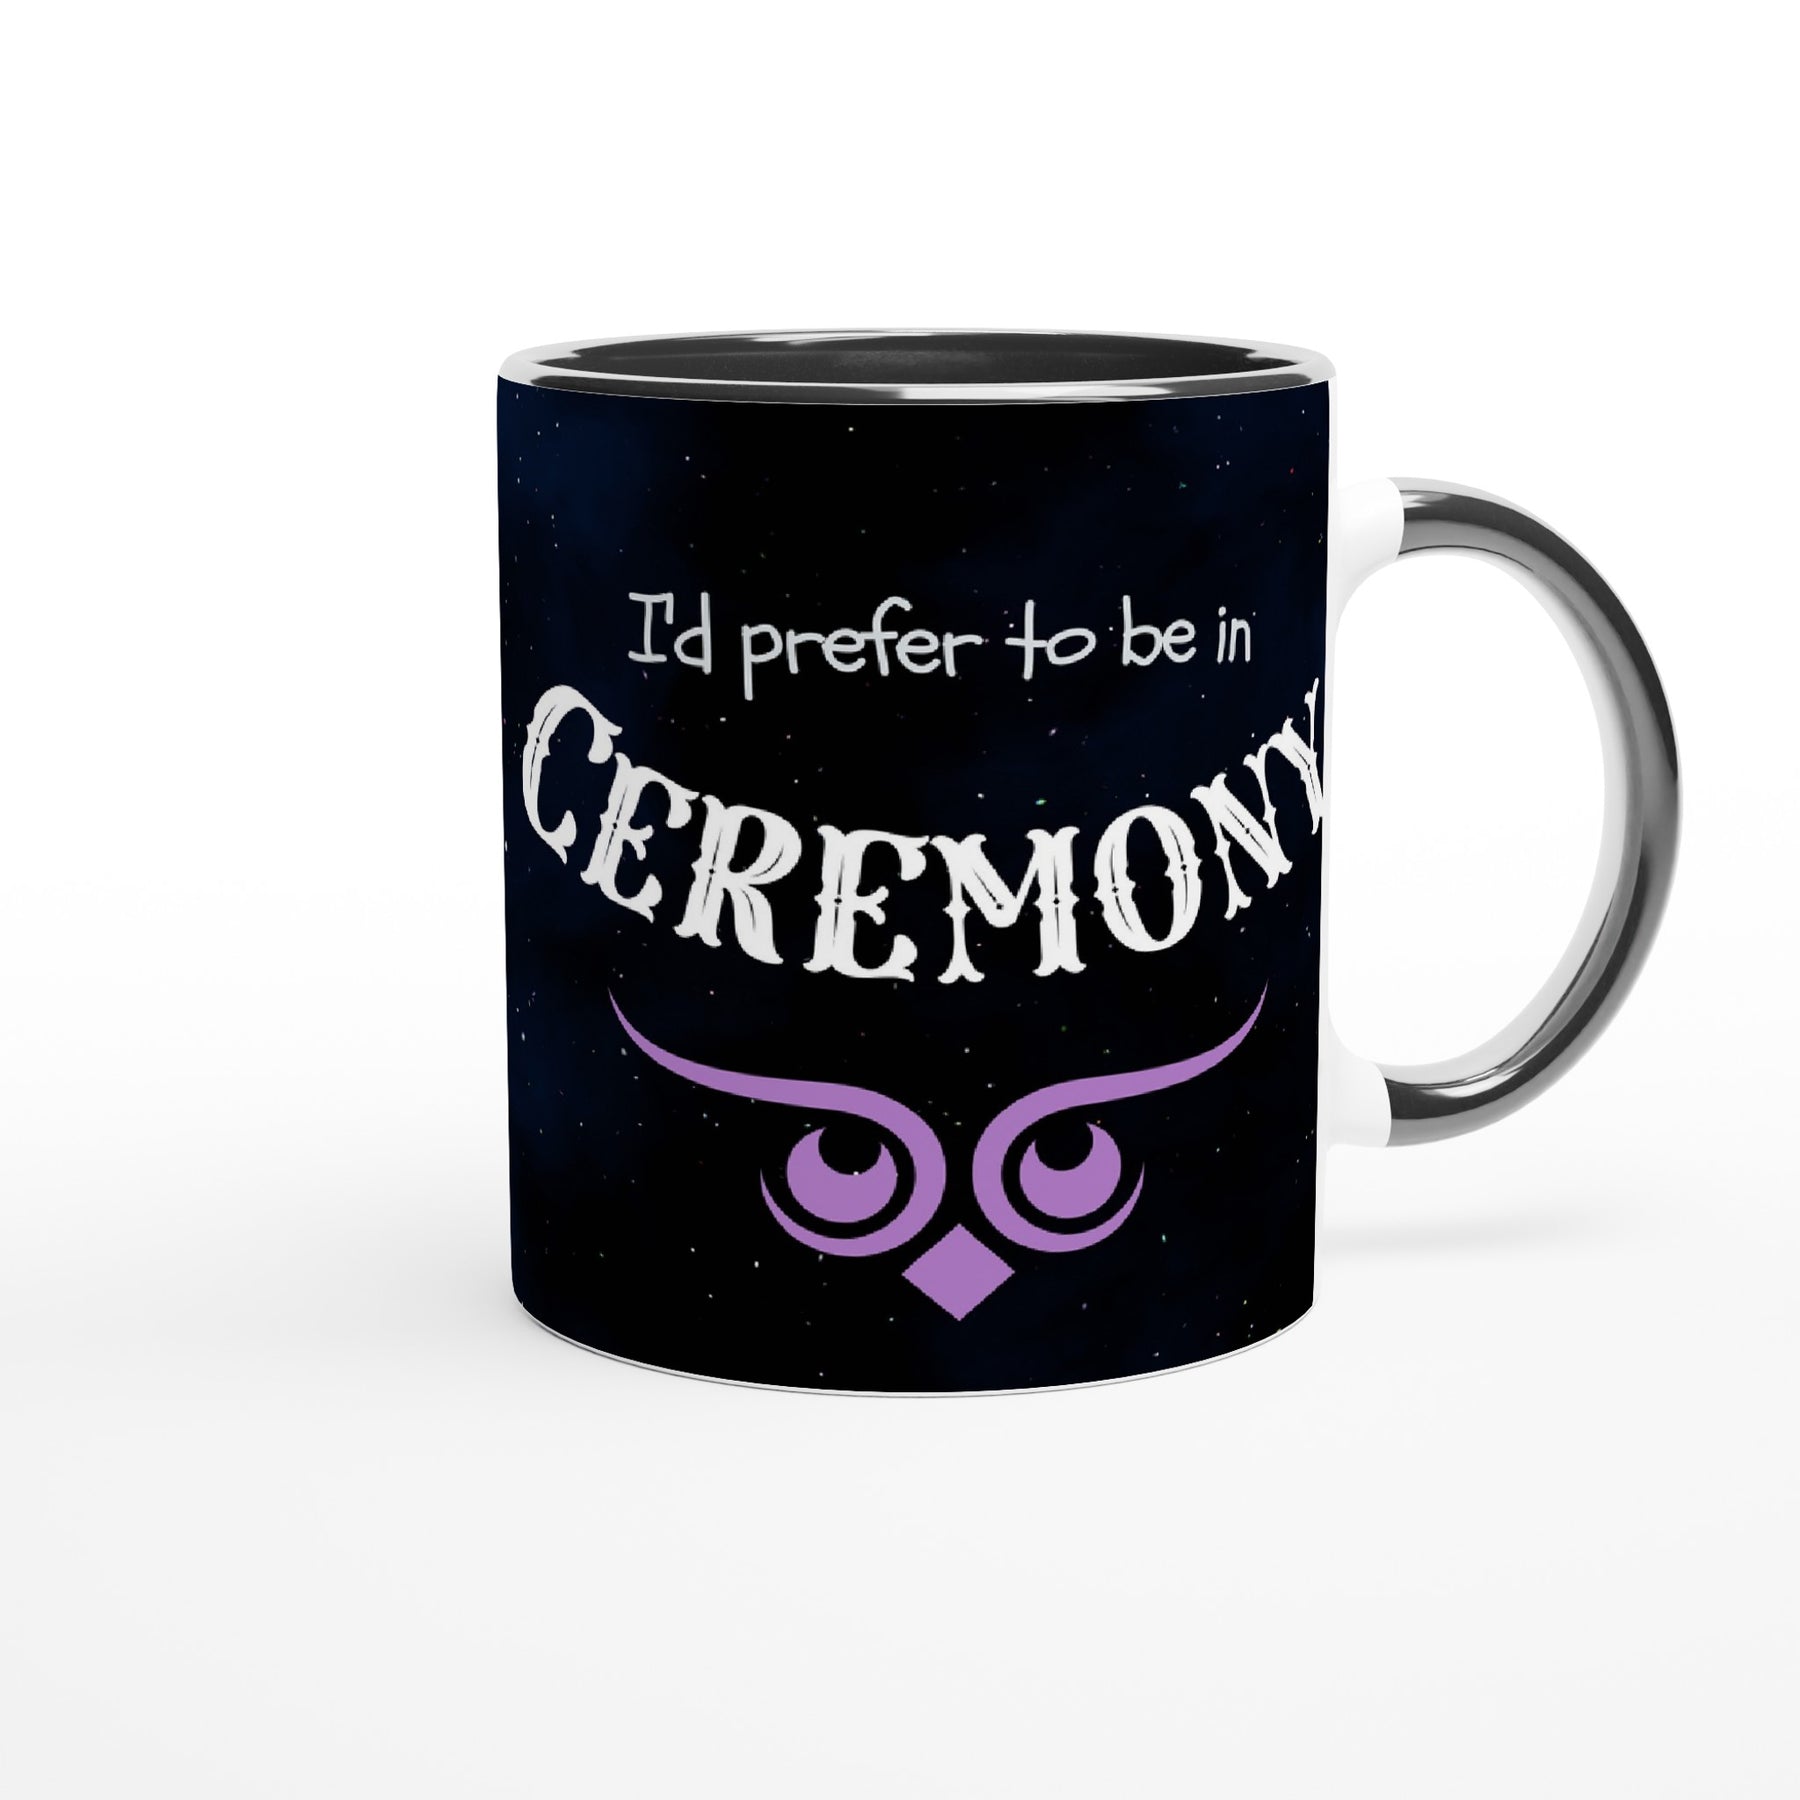 I'd prefer to be in ceremony- Mug